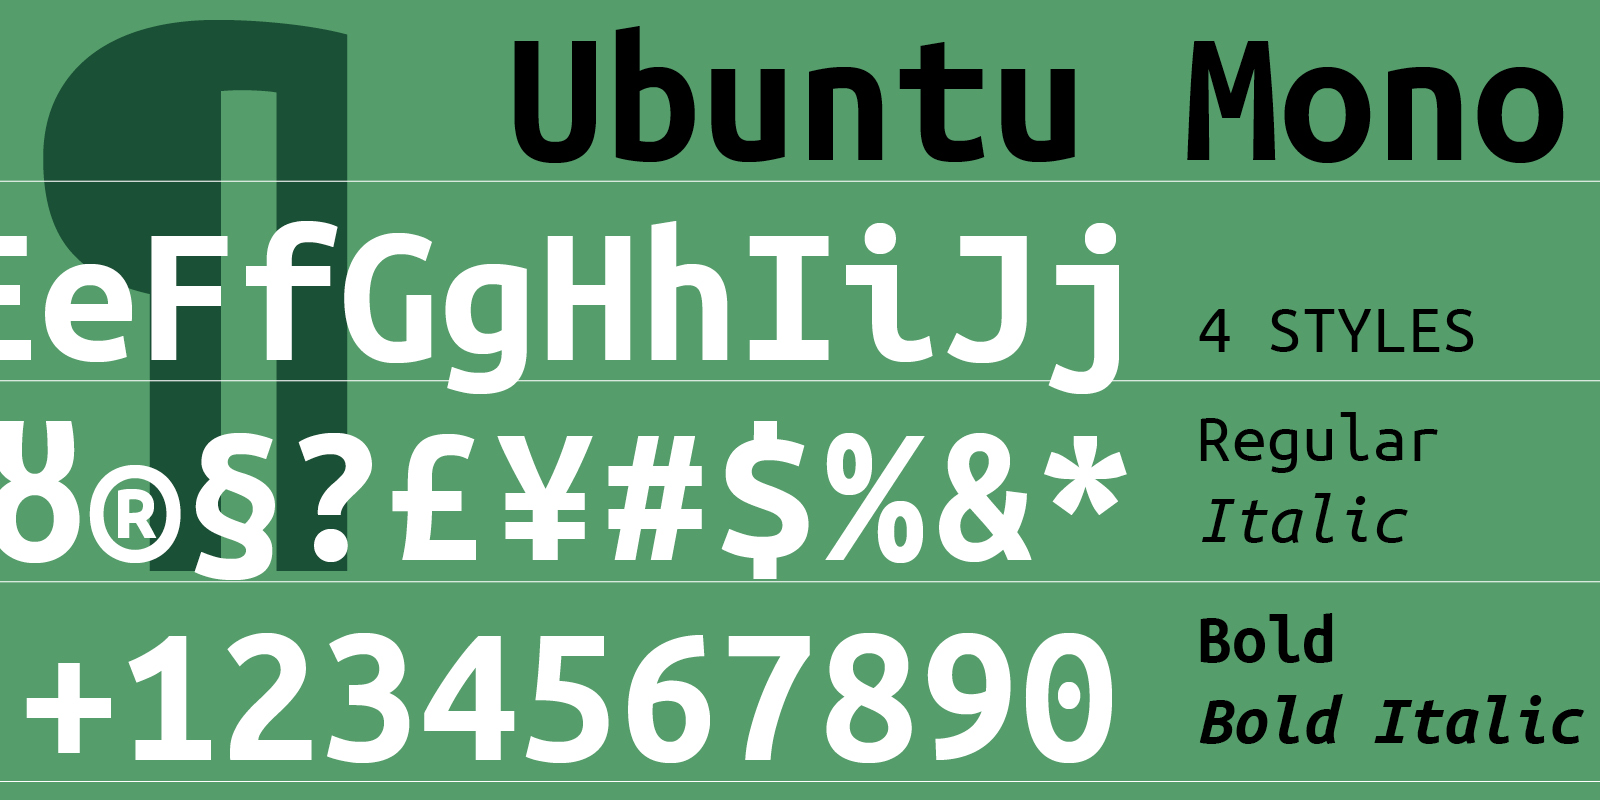 Card displaying Ubuntu Mono typeface in various styles